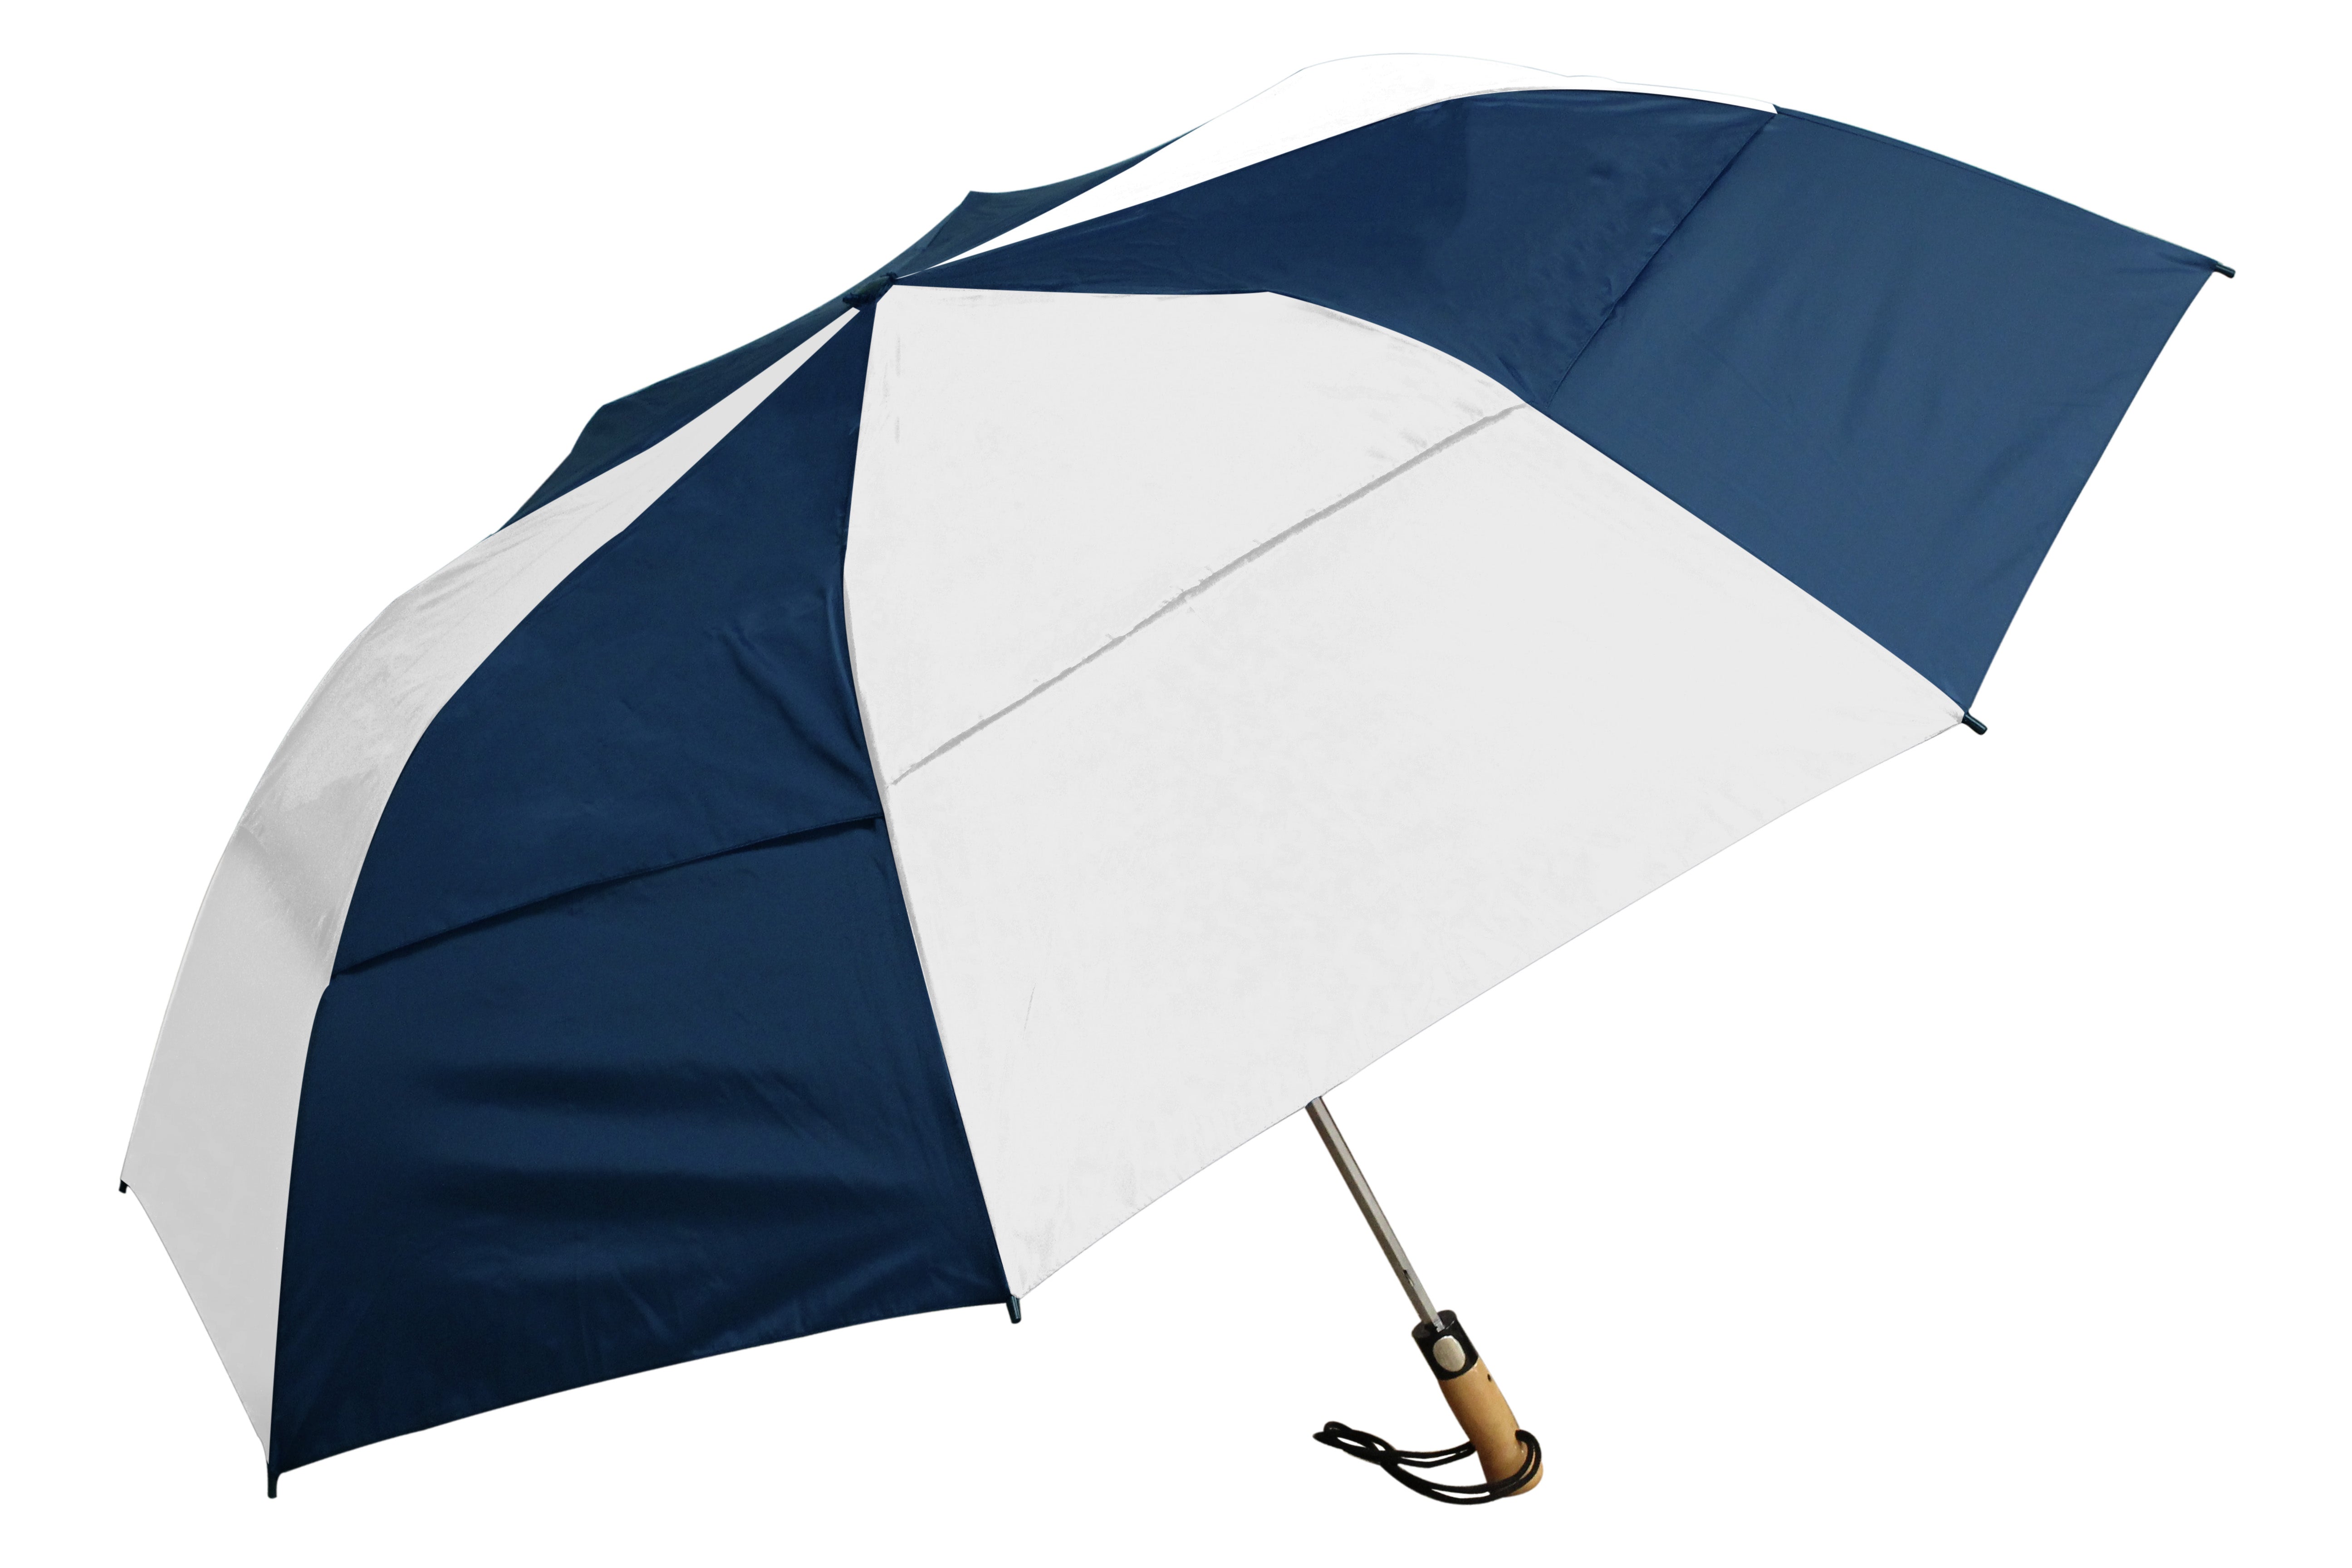 Maelstrom Umbrella